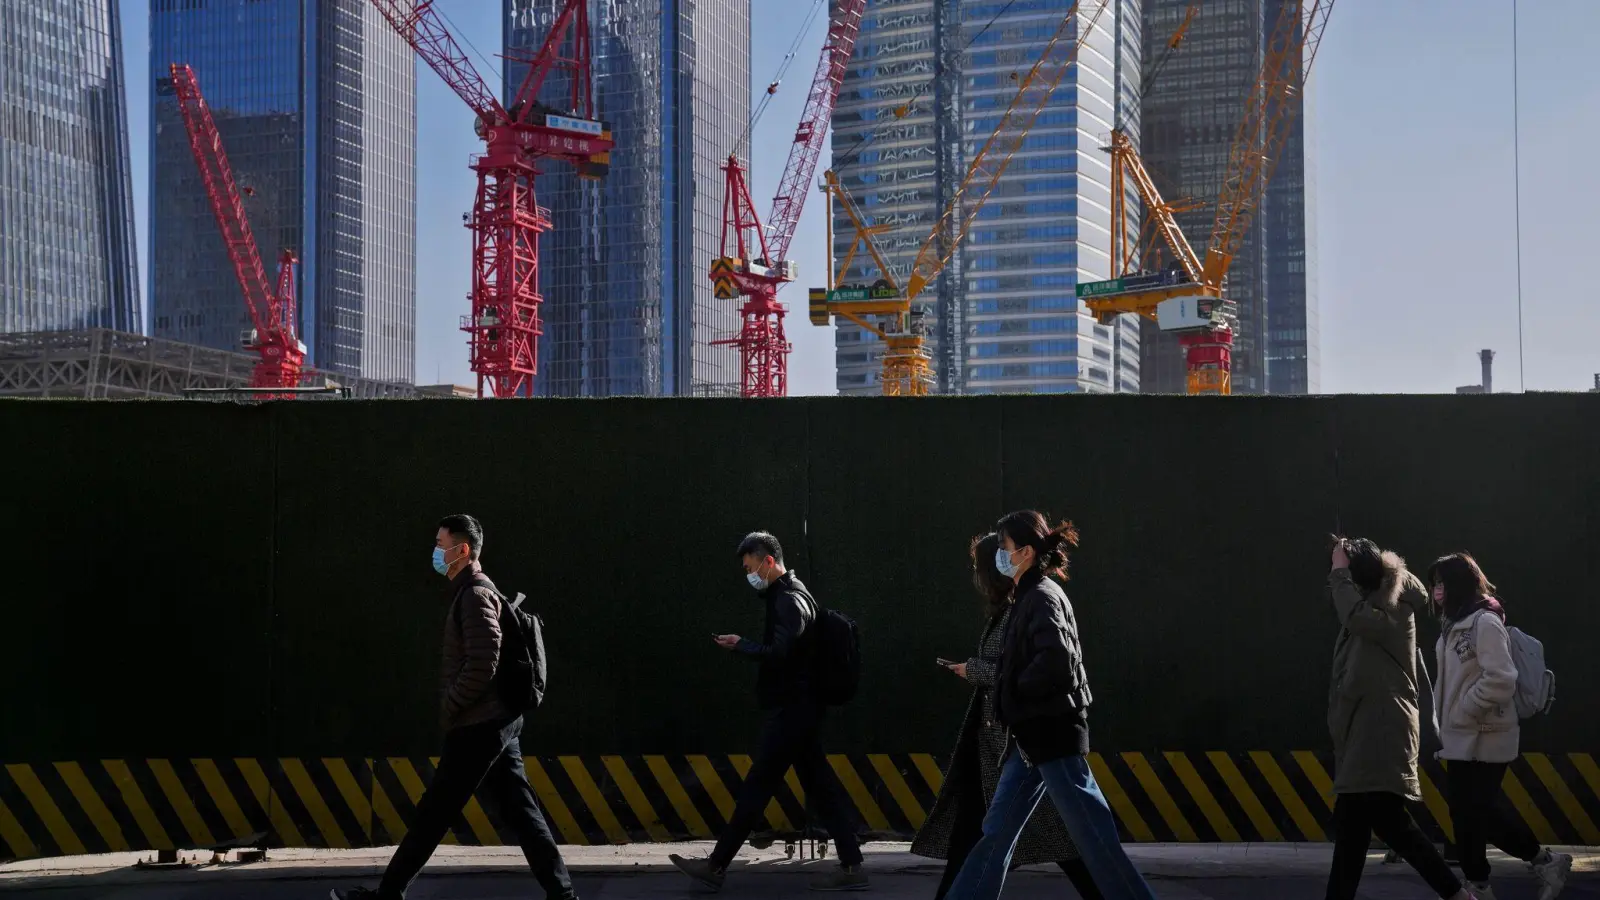 Menschen mit Masken gehen an Baukränen in Pekings Geschäftsviertel vorbei. Erste Wirtschaftszahlen nach der Abkehr Chinas von seiner strikten Corona-Politik zeigen eine moderate Erholung der Konjunktur. (Foto: Andy Wong/AP)